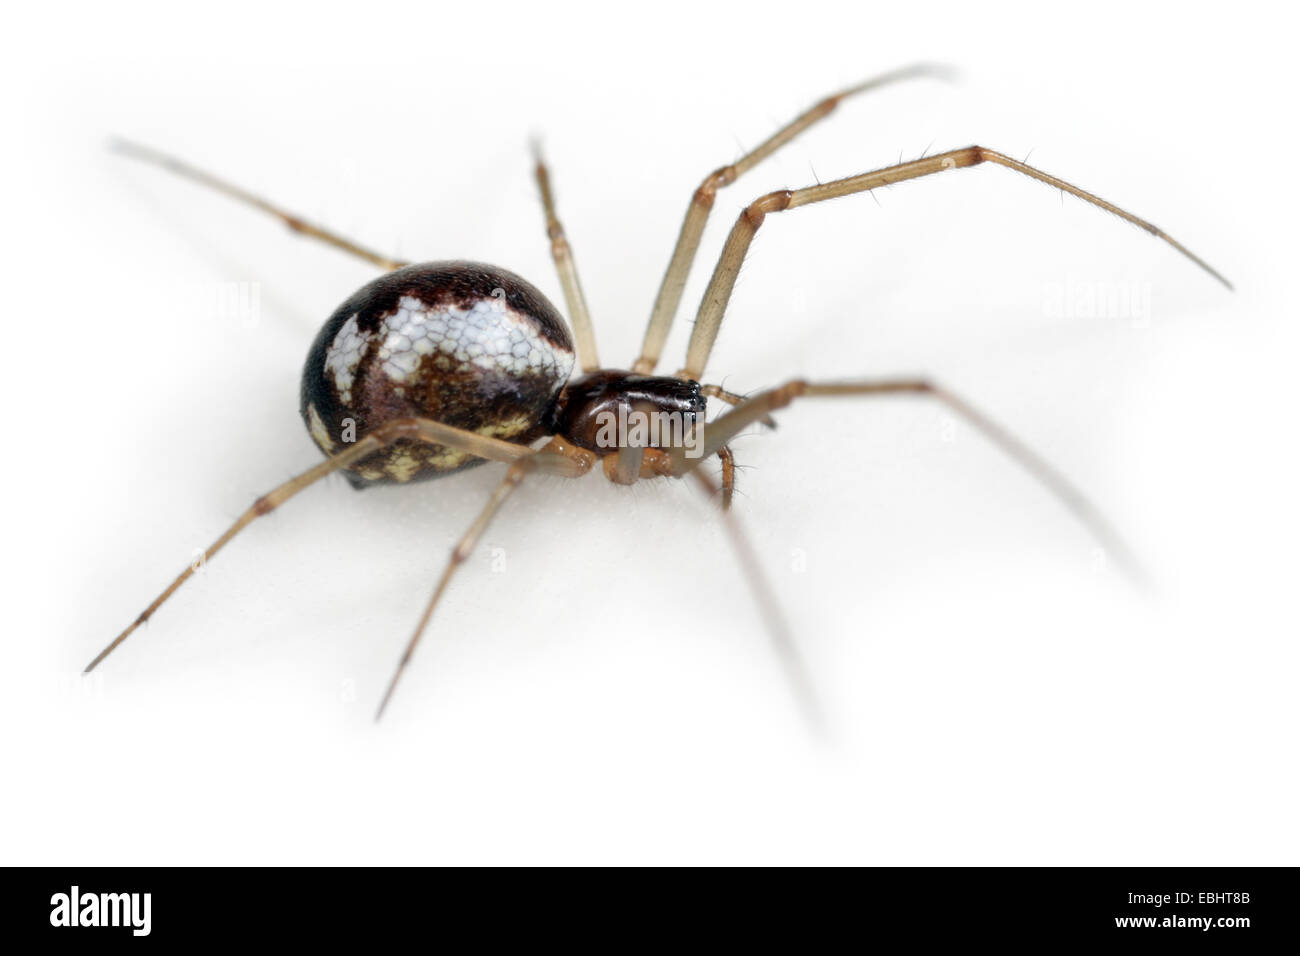 Hembra Neriene peltata spider sobre fondo blanco, la familia Linyphiidae, Sheetweb tejedores. Foto de stock